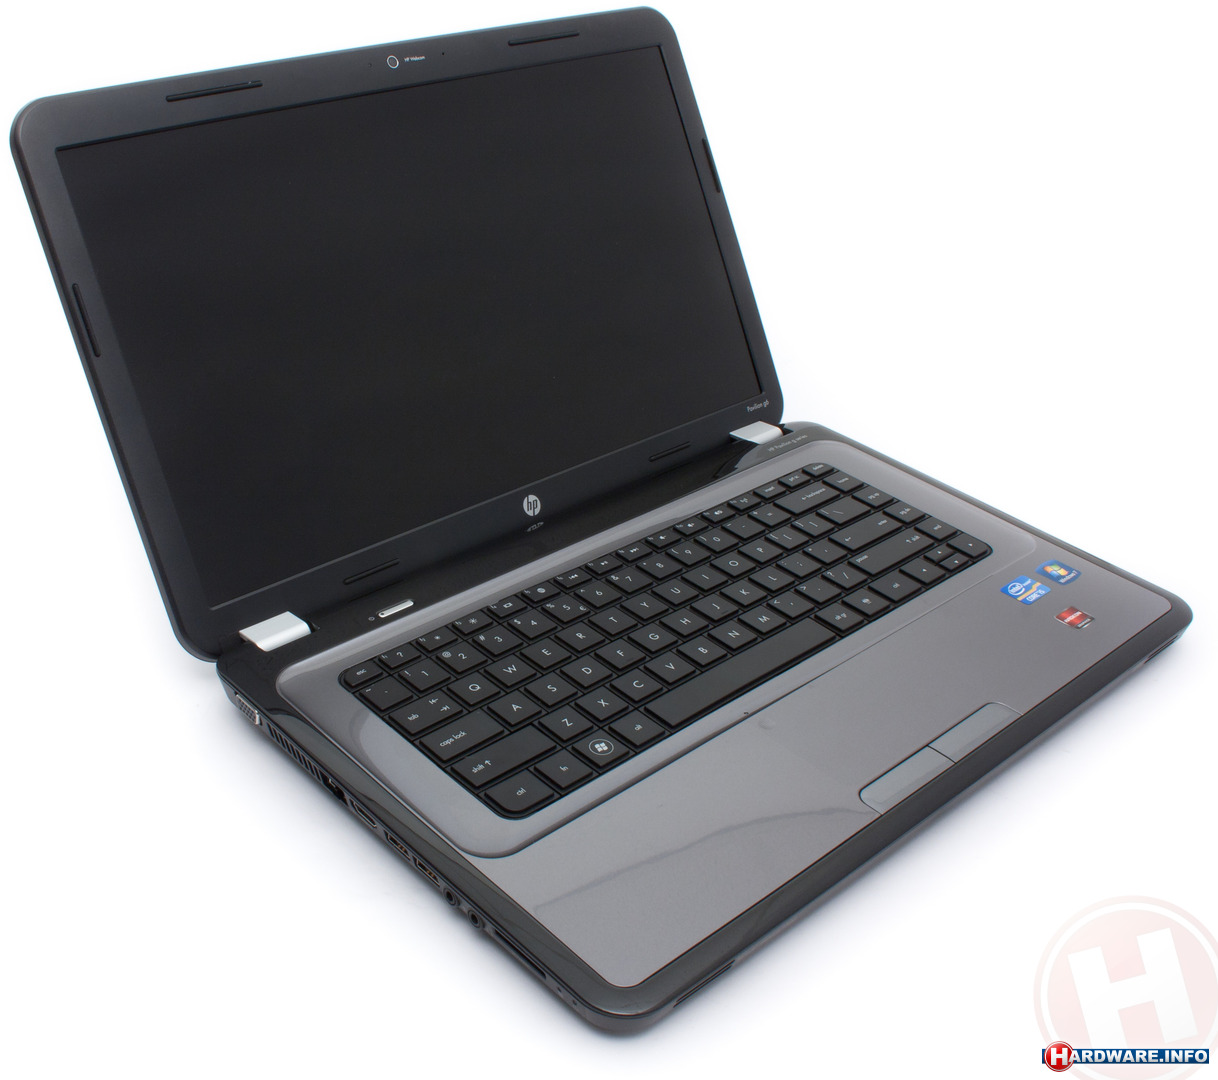 toenemen snap Een computer gebruiken HP Pavilion g6-1250sd (A1Z63EA) laptop - Hardware Info